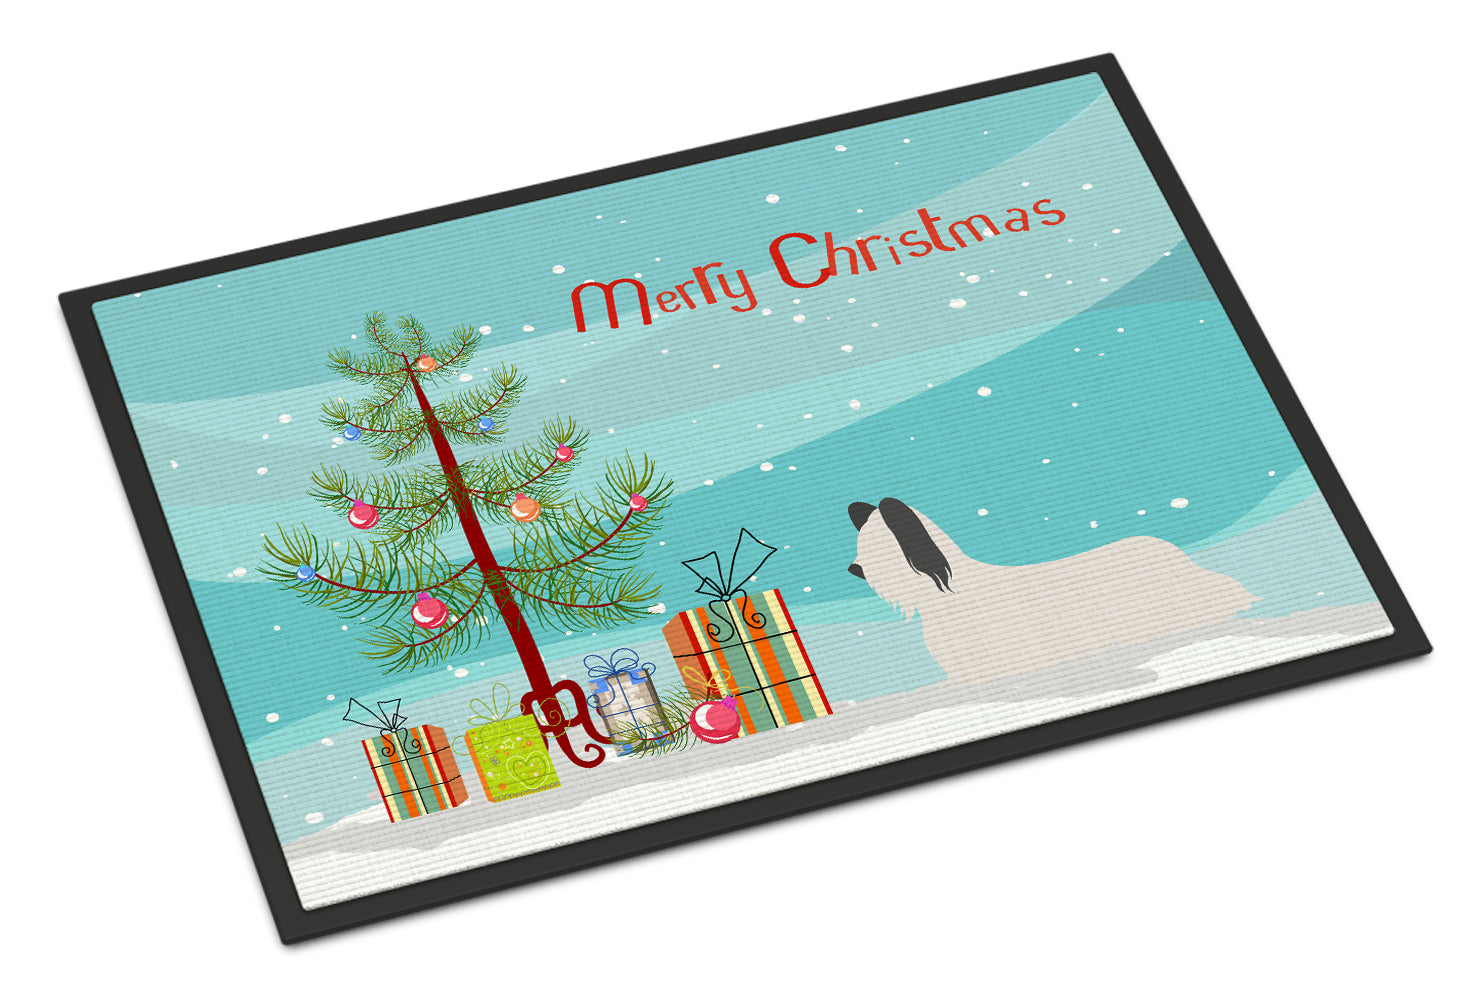 Skye Terrier Christmas Indoor or Outdoor Mat 18x27 BB8440MAT - the-store.com